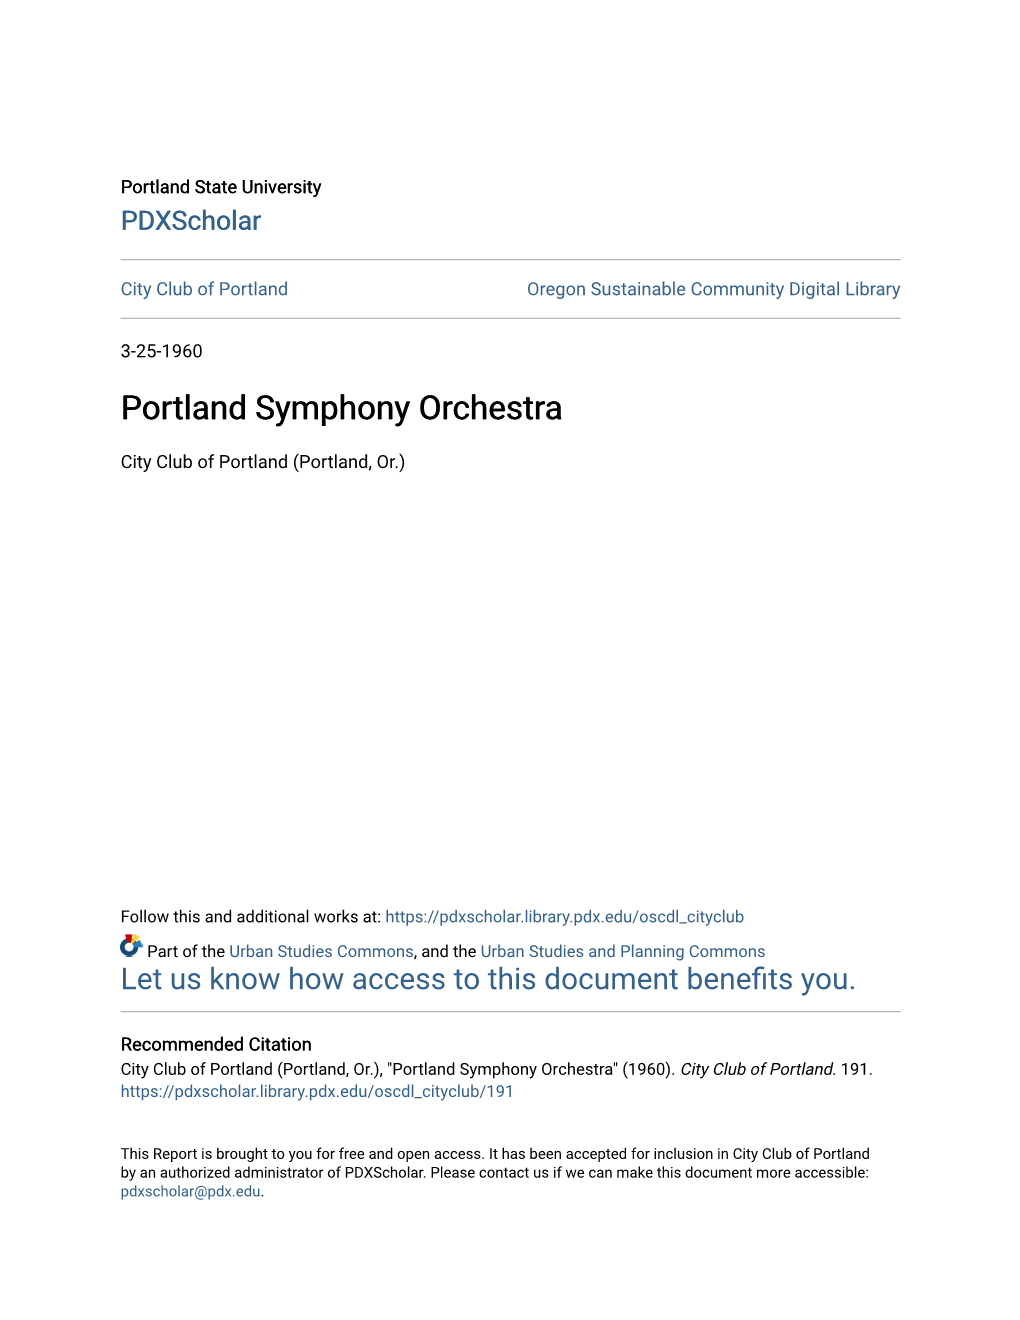 Portland Symphony Orchestra